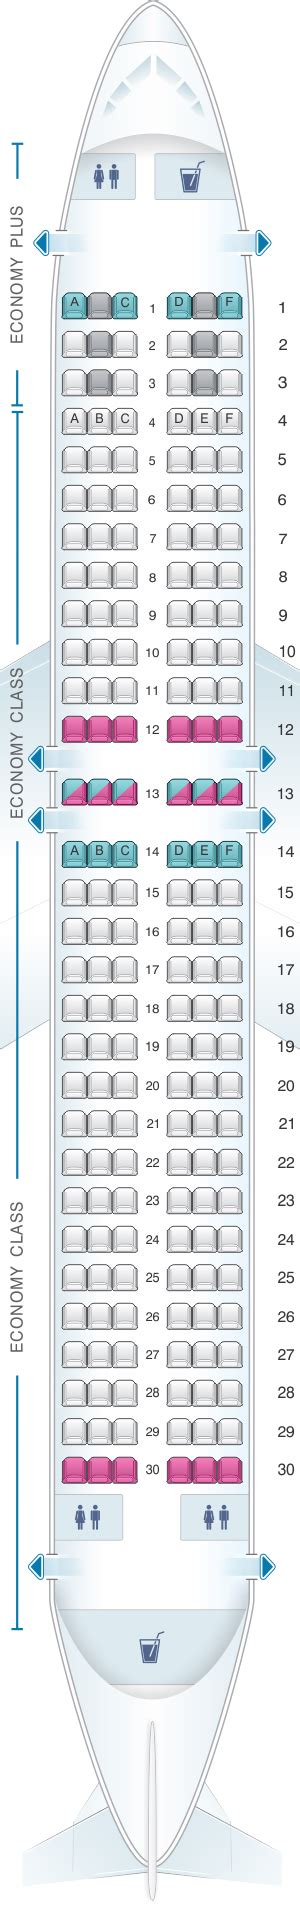 Boeing 737 Max 8 Floor Plan